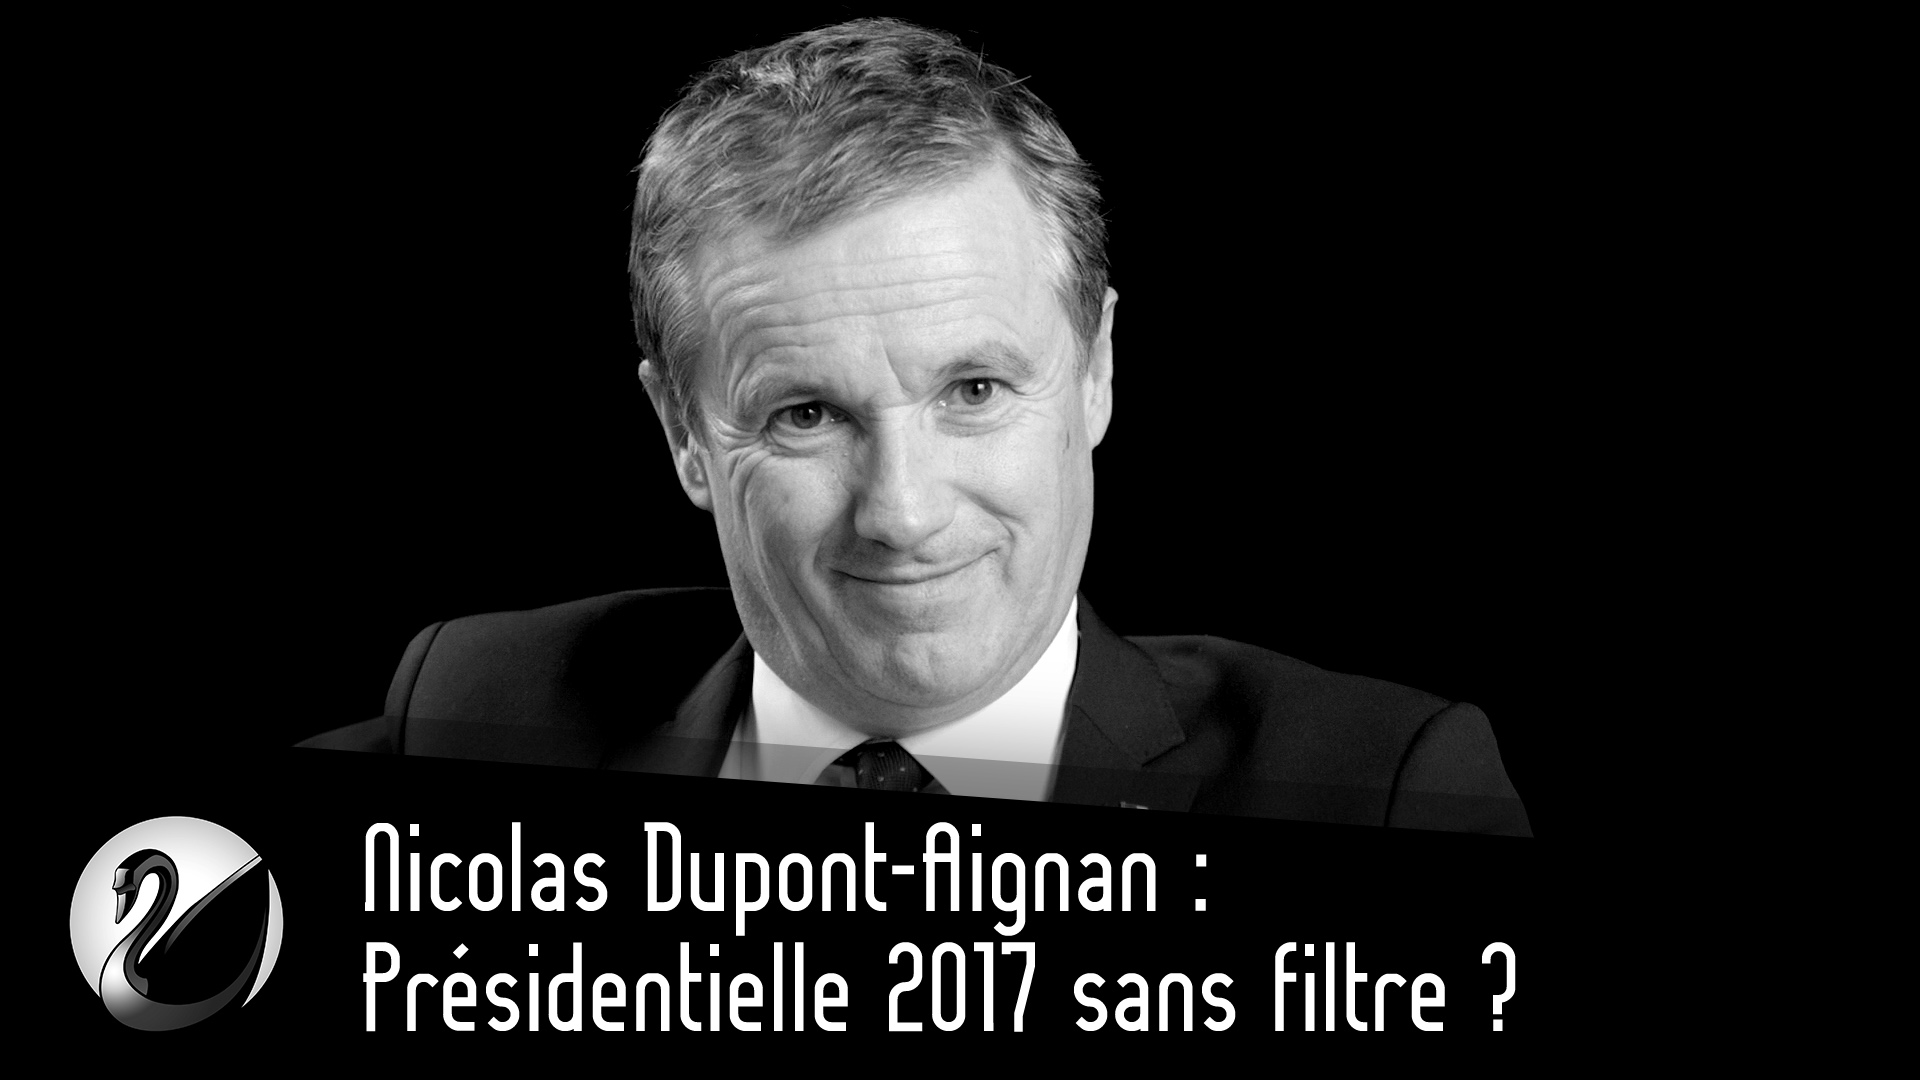 Nicolas Dupont-Aignan : Pr\u00e9sidentielle 2017 sans filtre ? - Thinkerview